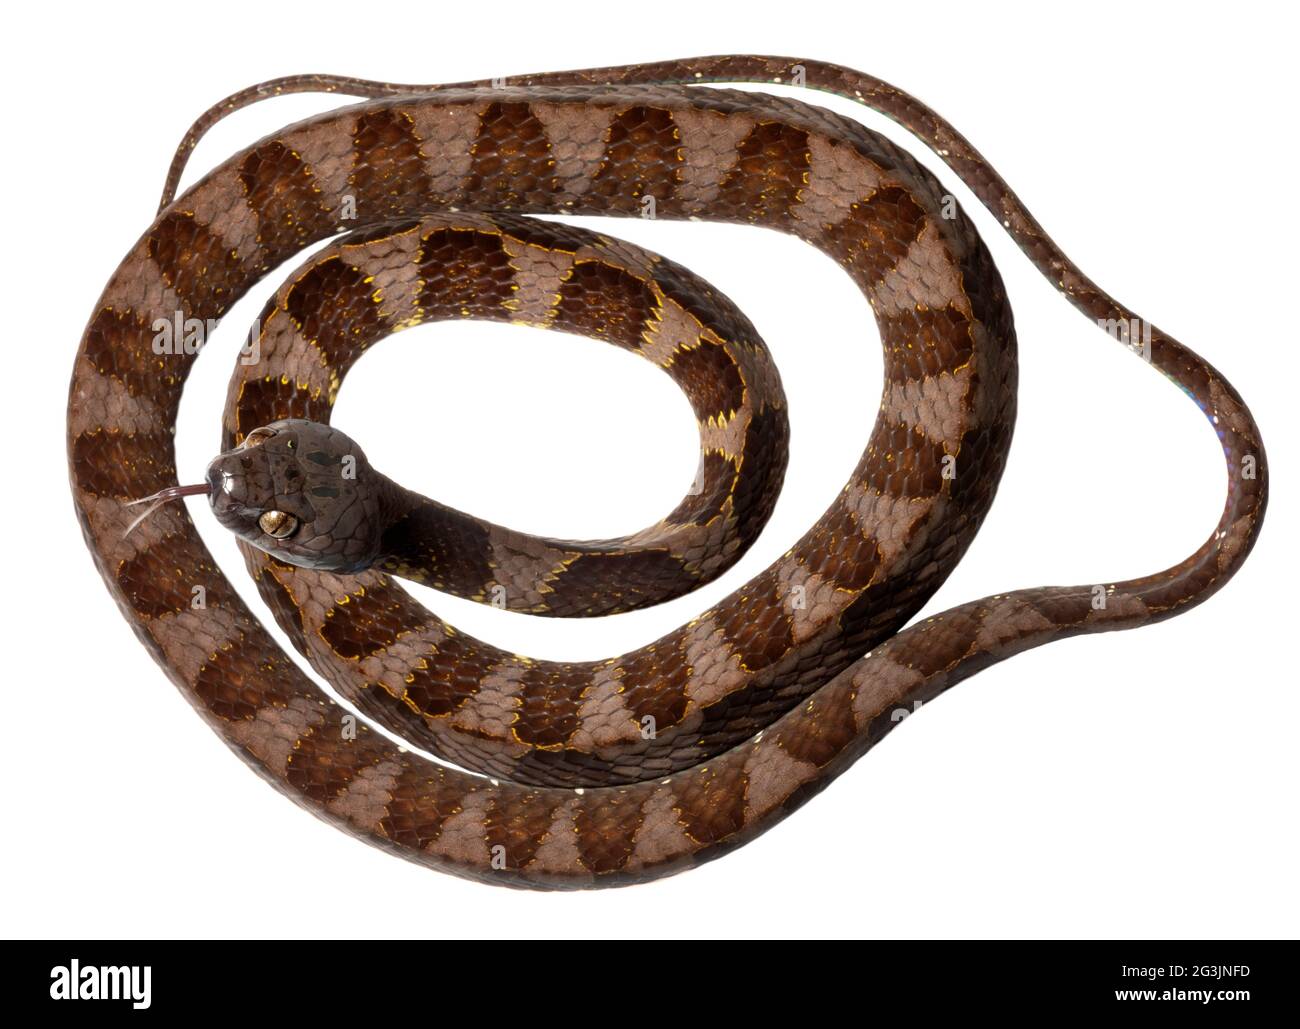 Neotropical snail-eater snake (Dipsas indica), Orellana province, Ecuador Stock Photo